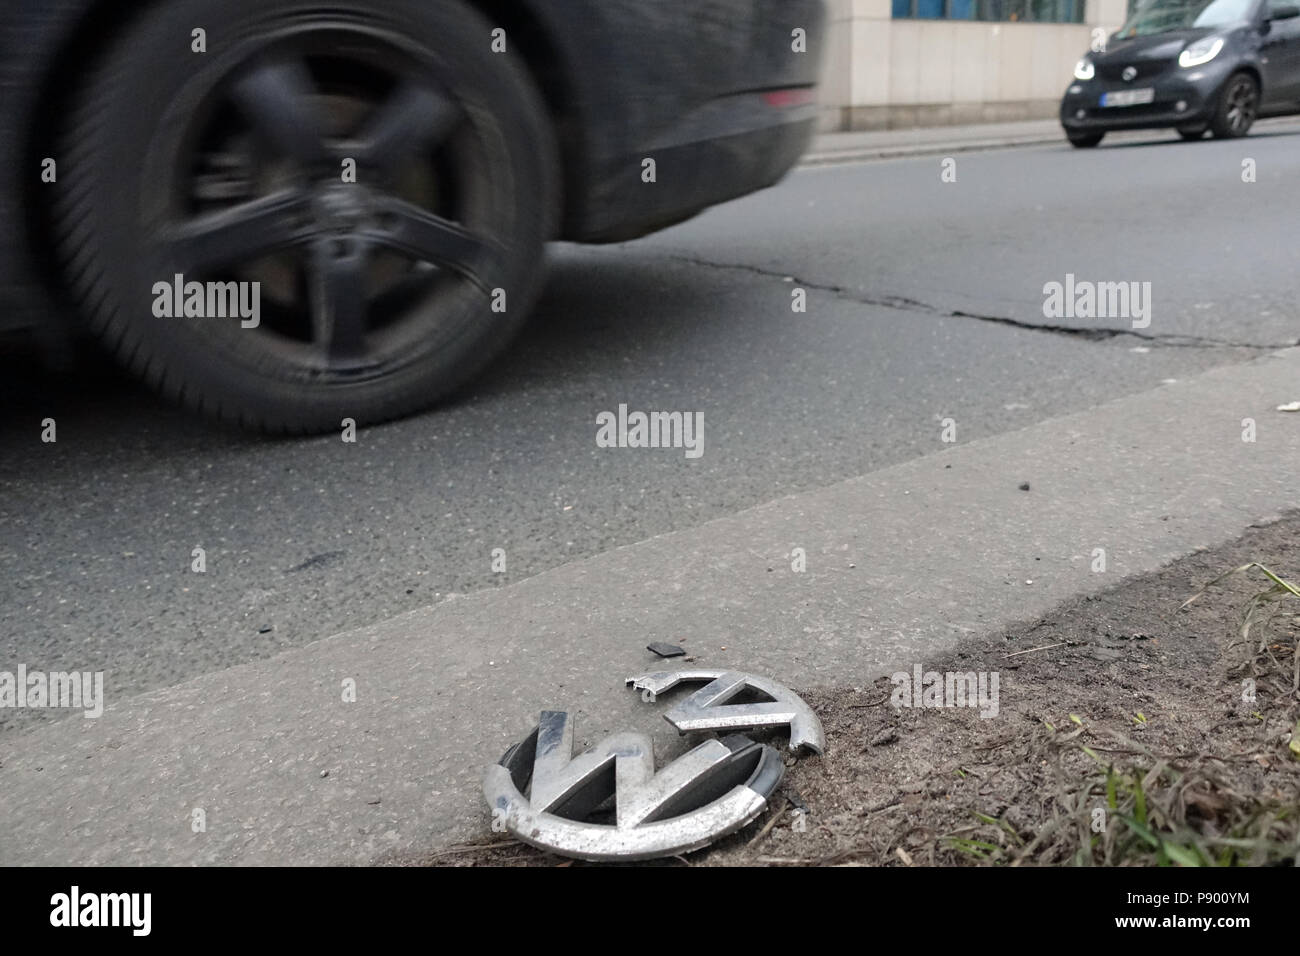 Berlín, Alemania, emblema de la rejilla de la parrilla rota un Volkswagen está situado en la carretera Foto de stock